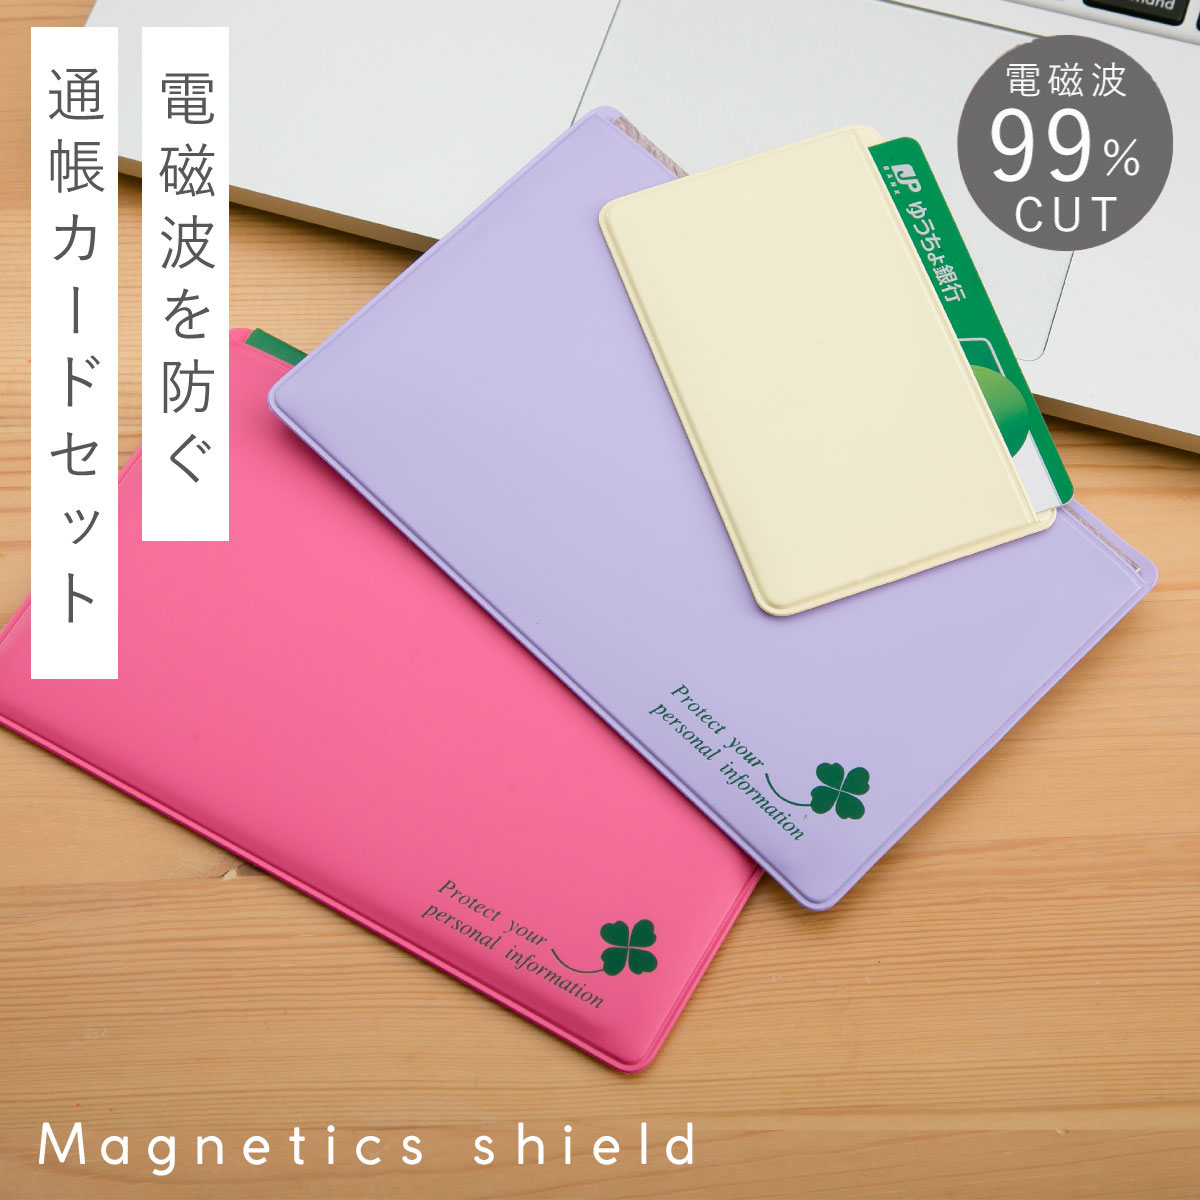 通帳ケース 磁気 防止 磁気シールド スキミング防止 日本製 かわいい スキミング防止 カードケース...